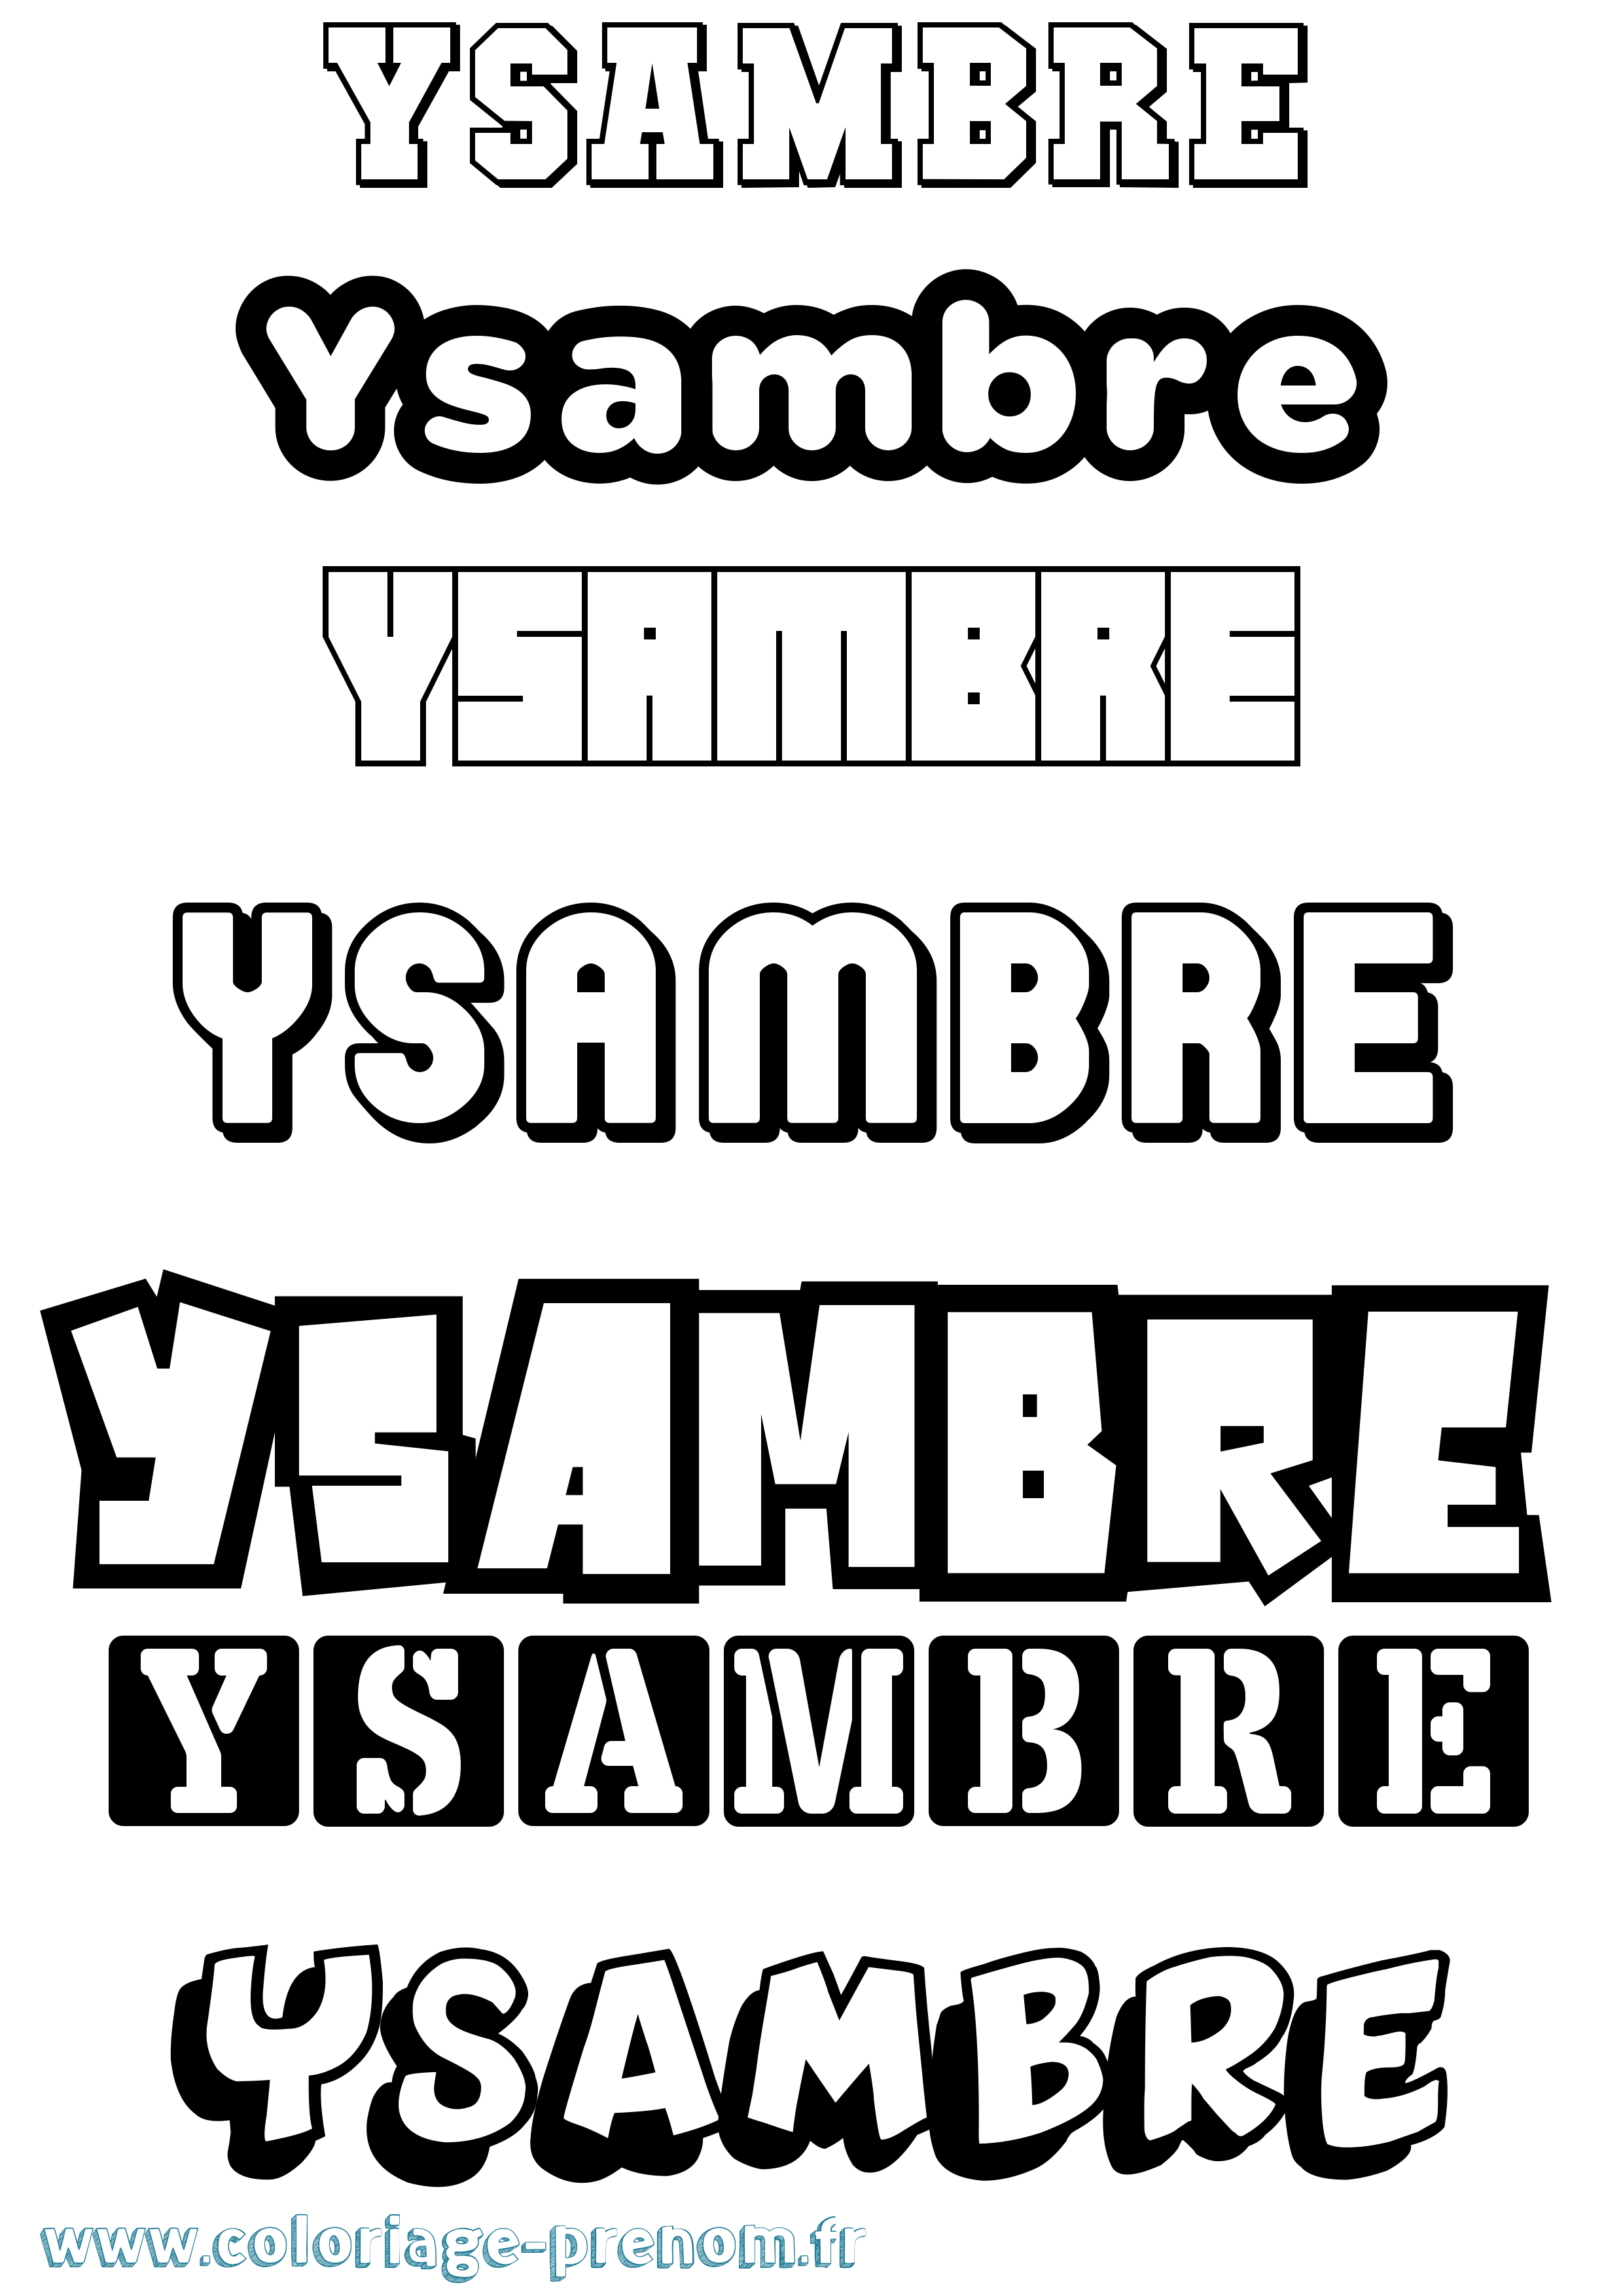 Coloriage prénom Ysambre Simple